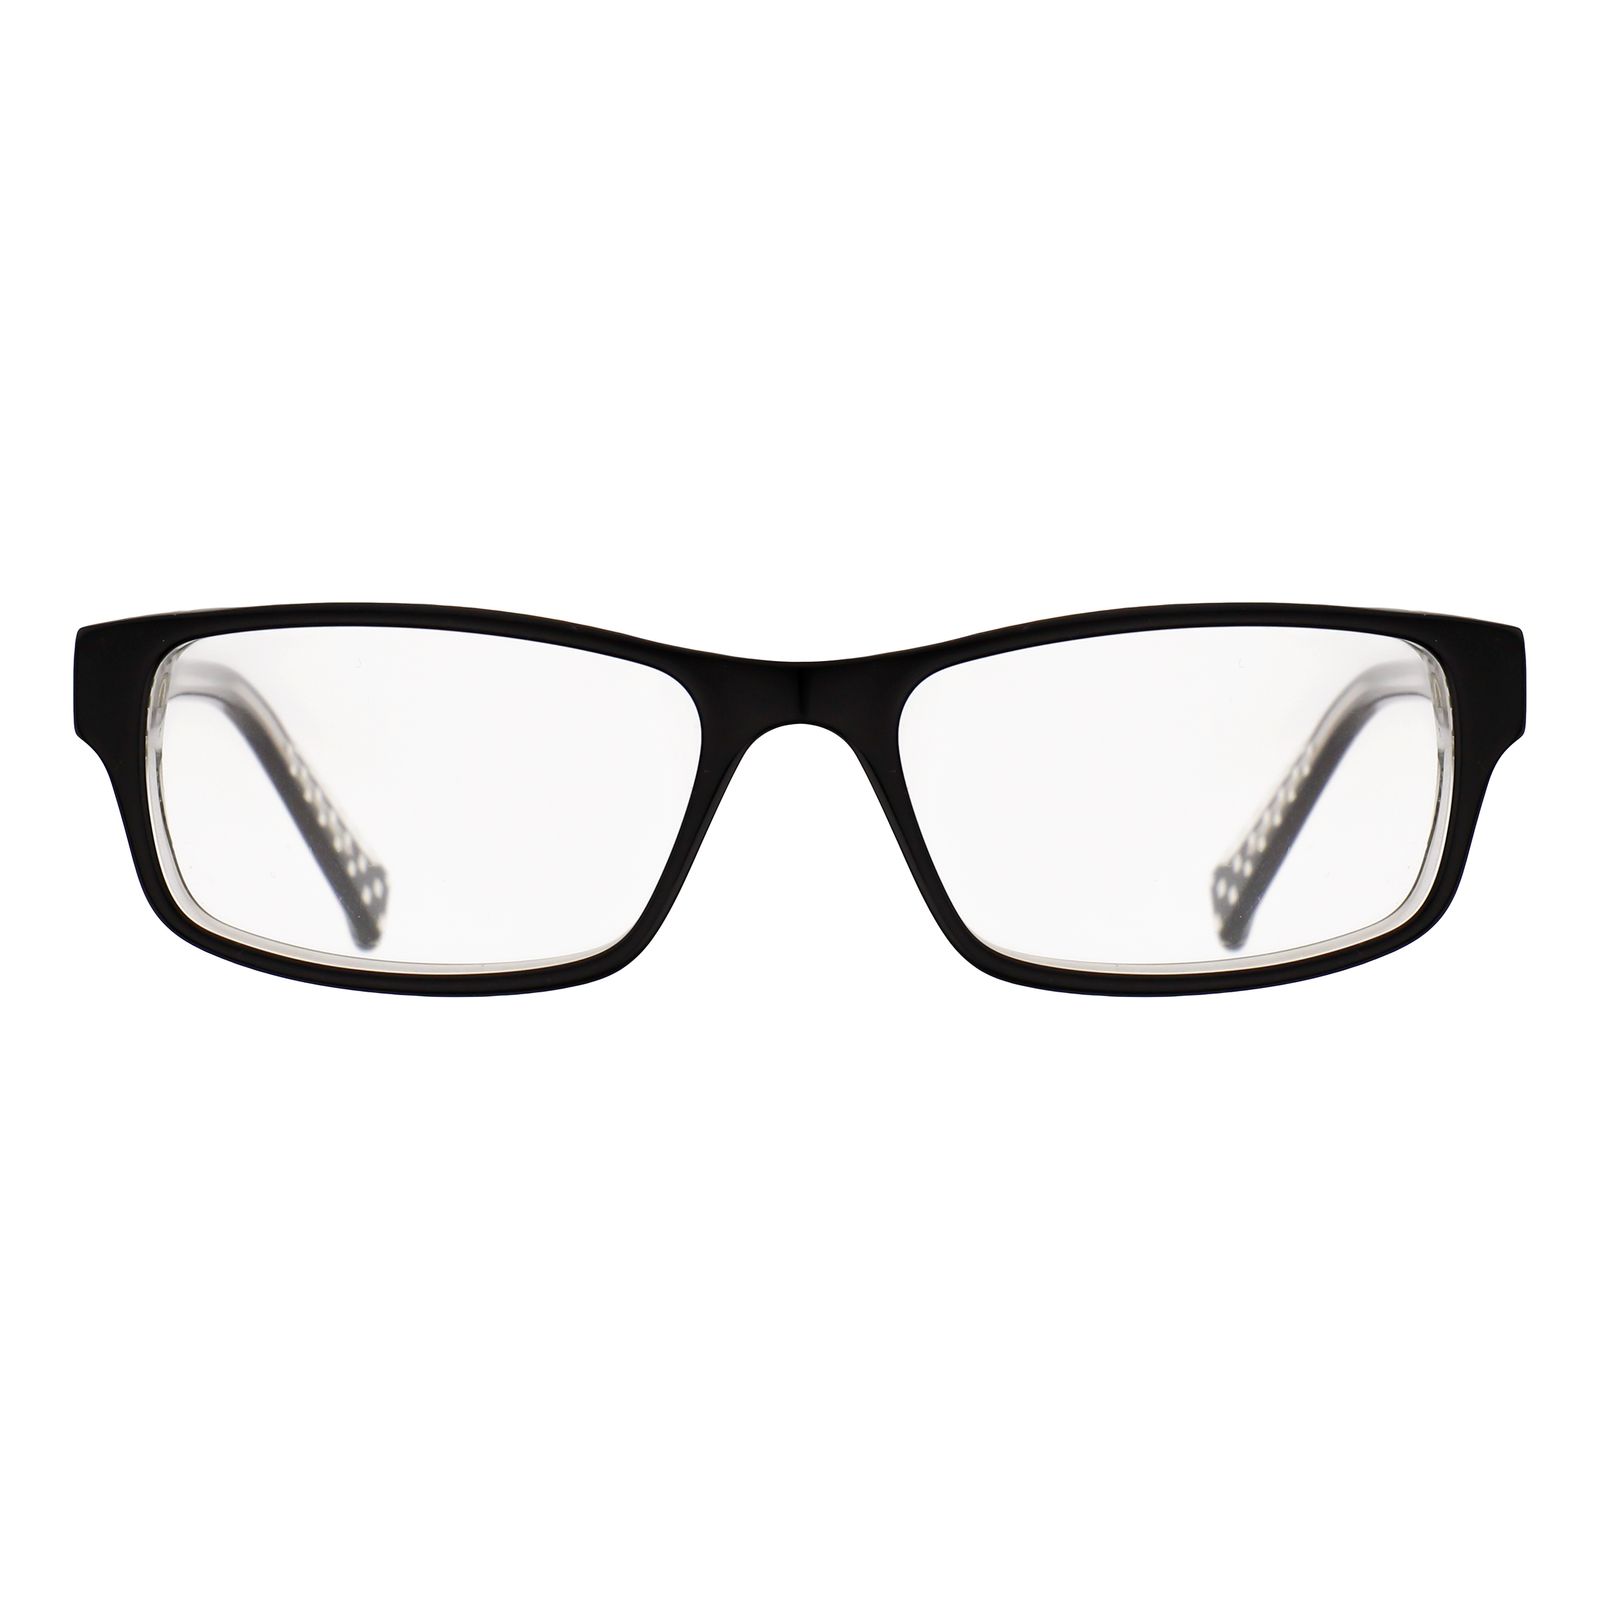 فریم عینک طبی نایک مدل 5507-1 -  - 1